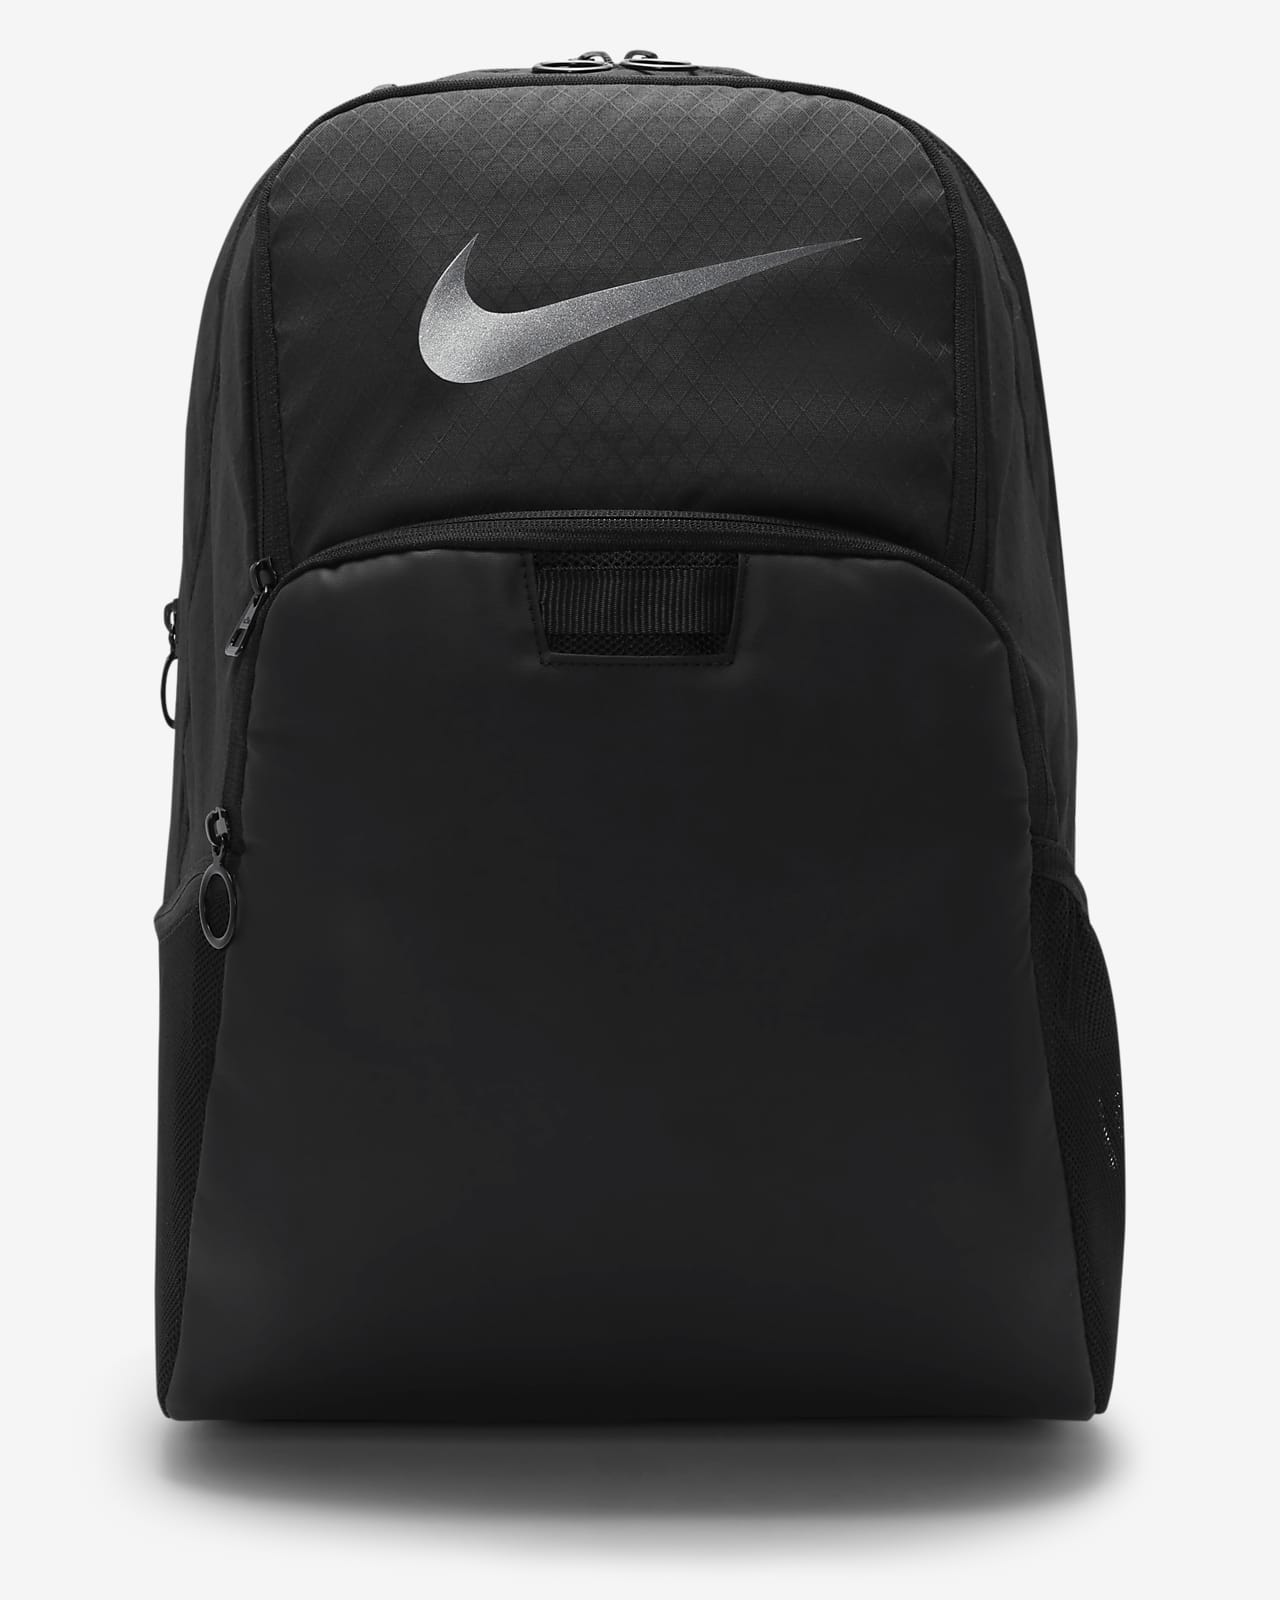 Утепленный рюкзак с графикой для тренинга Nike Brasilia (большой размер, 24 л)